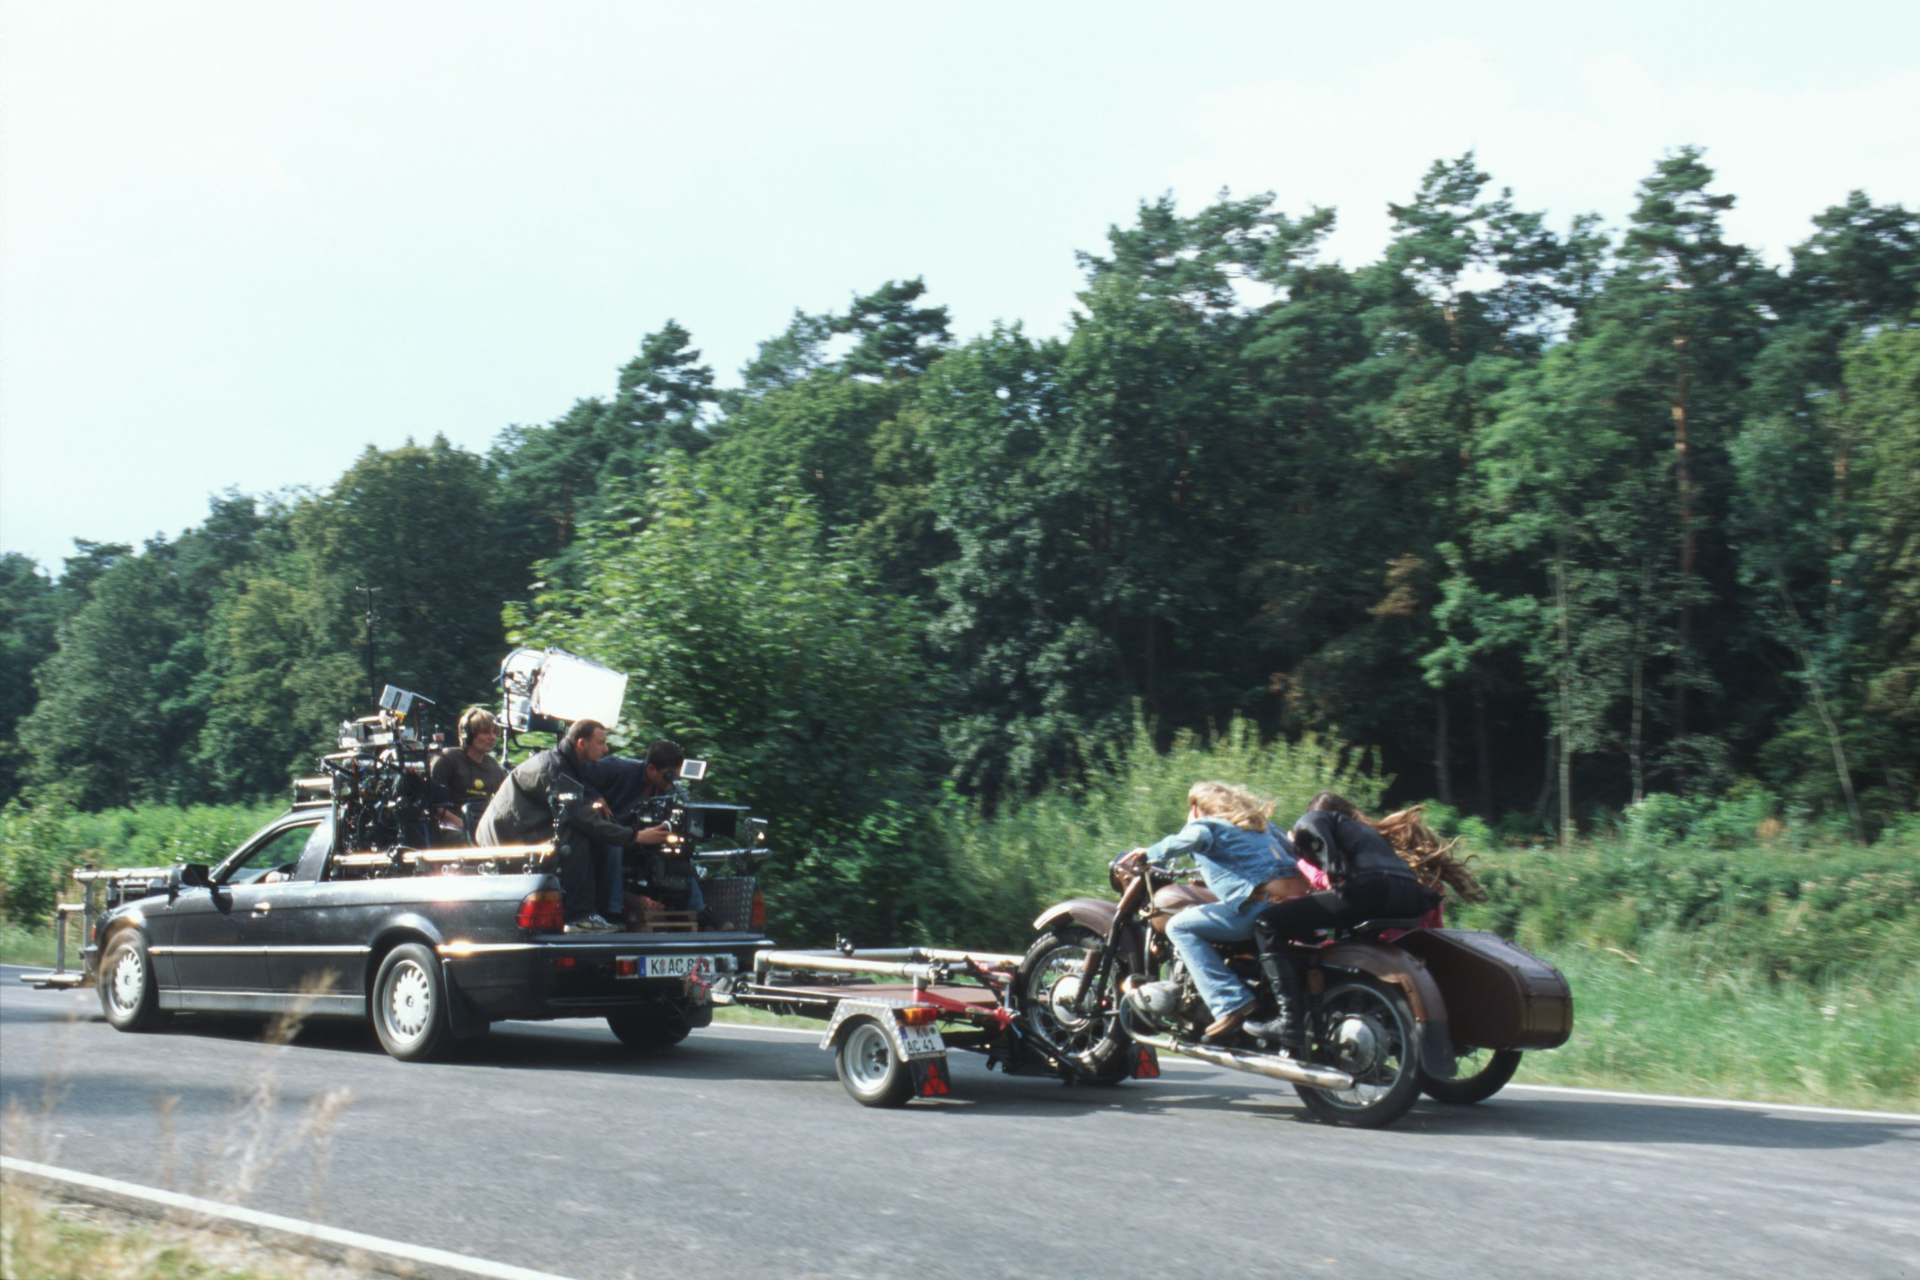 Kamerawagen in Aktion mit Motorradtrailer